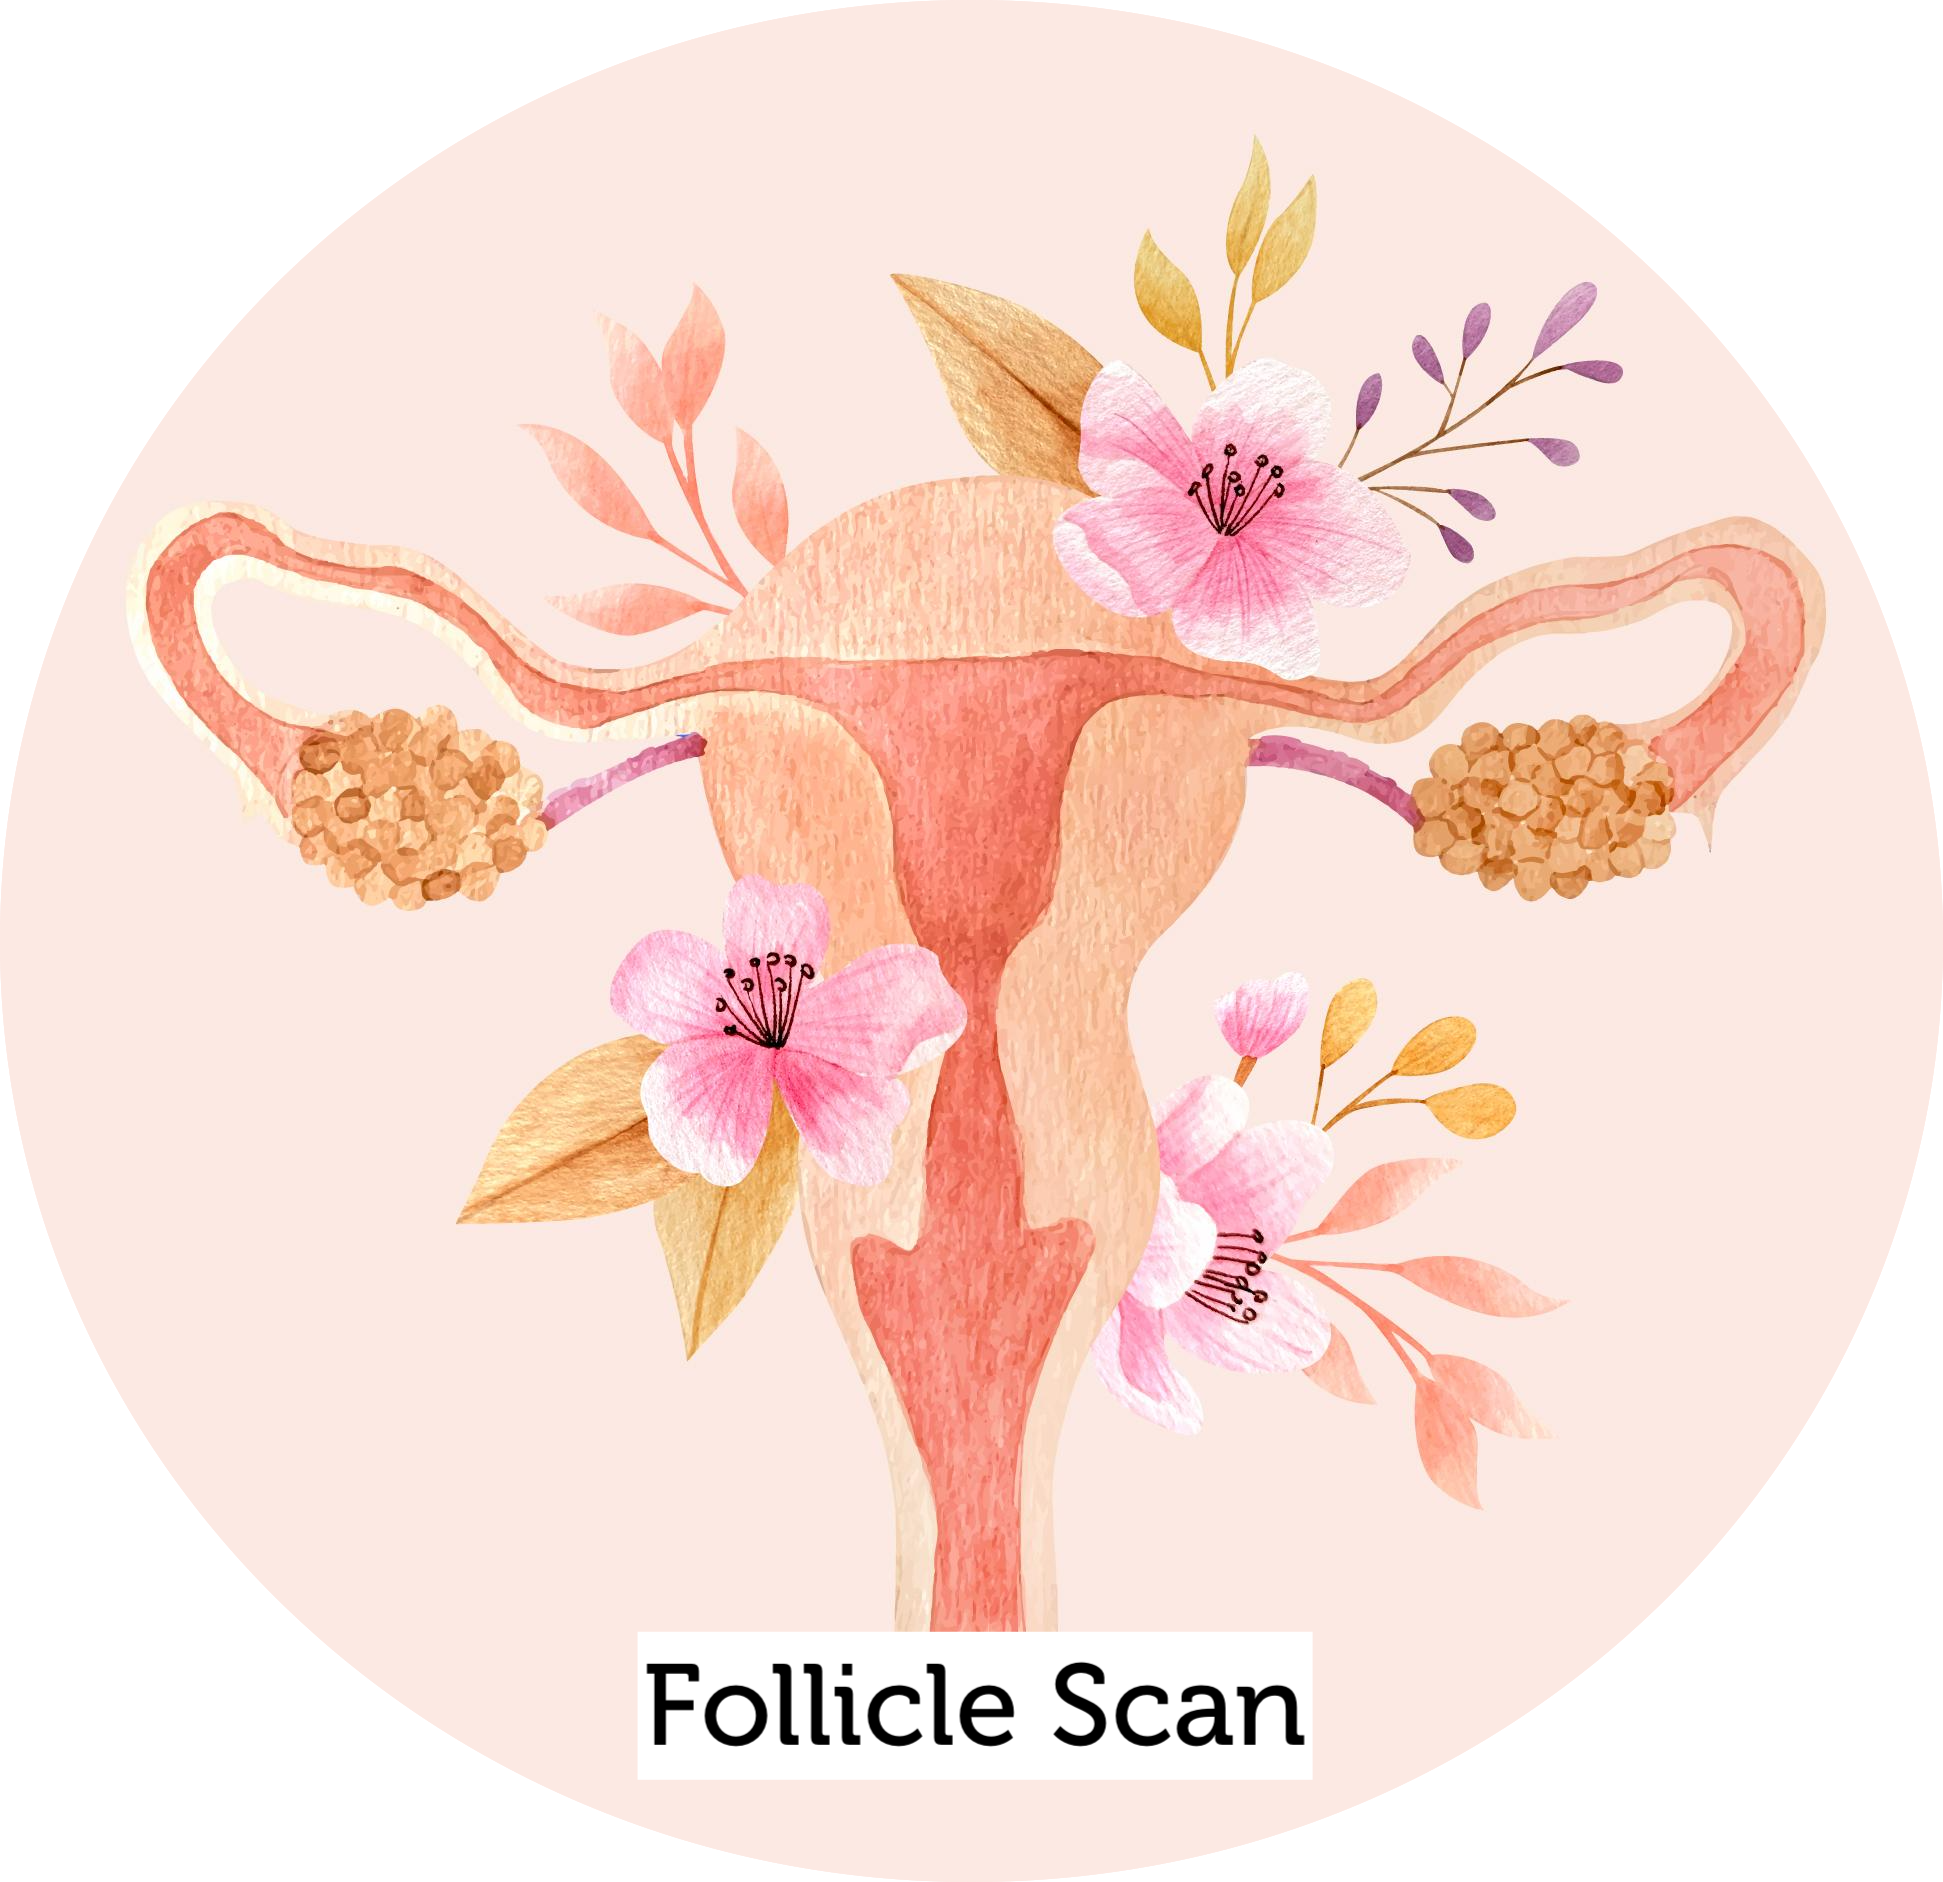 Follicle Scan